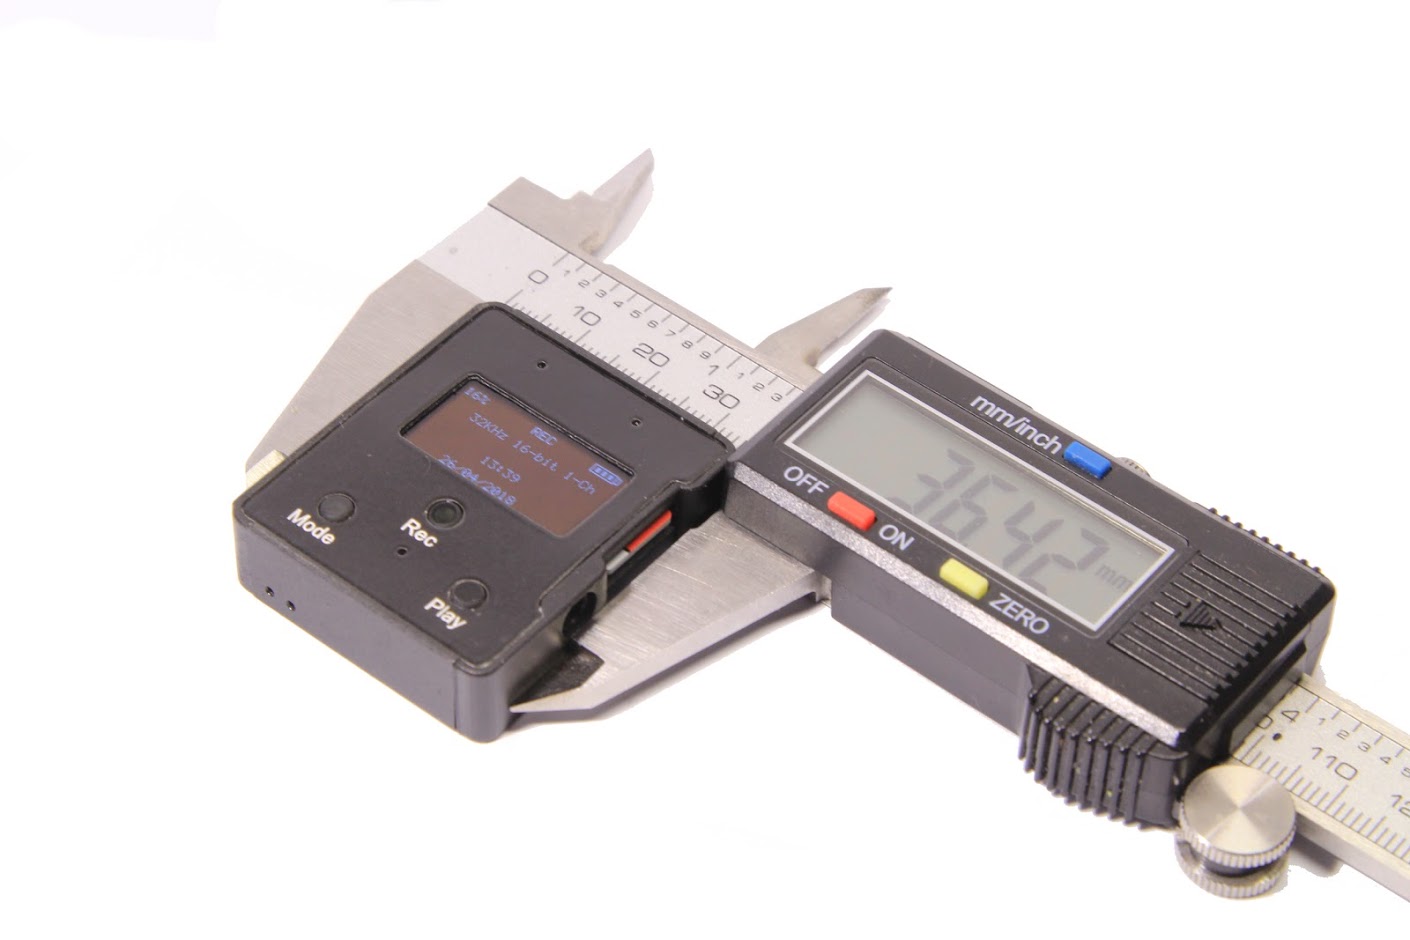 ТС Edic-mini CARD24S модель A102 диктофон цифровой